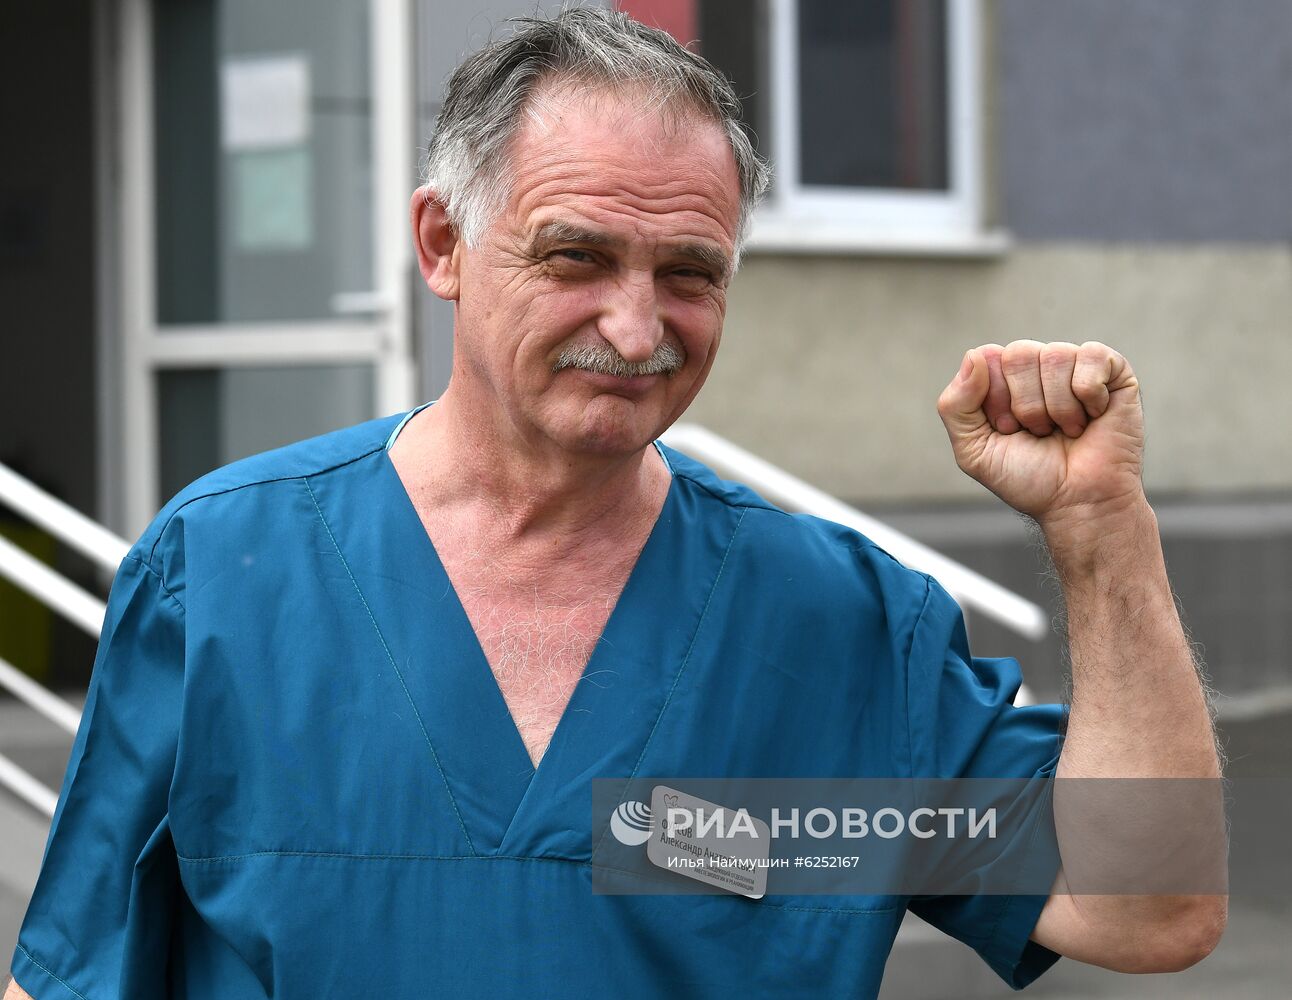 Красноярский федеральный центр сердечно-сосудистой хирургии